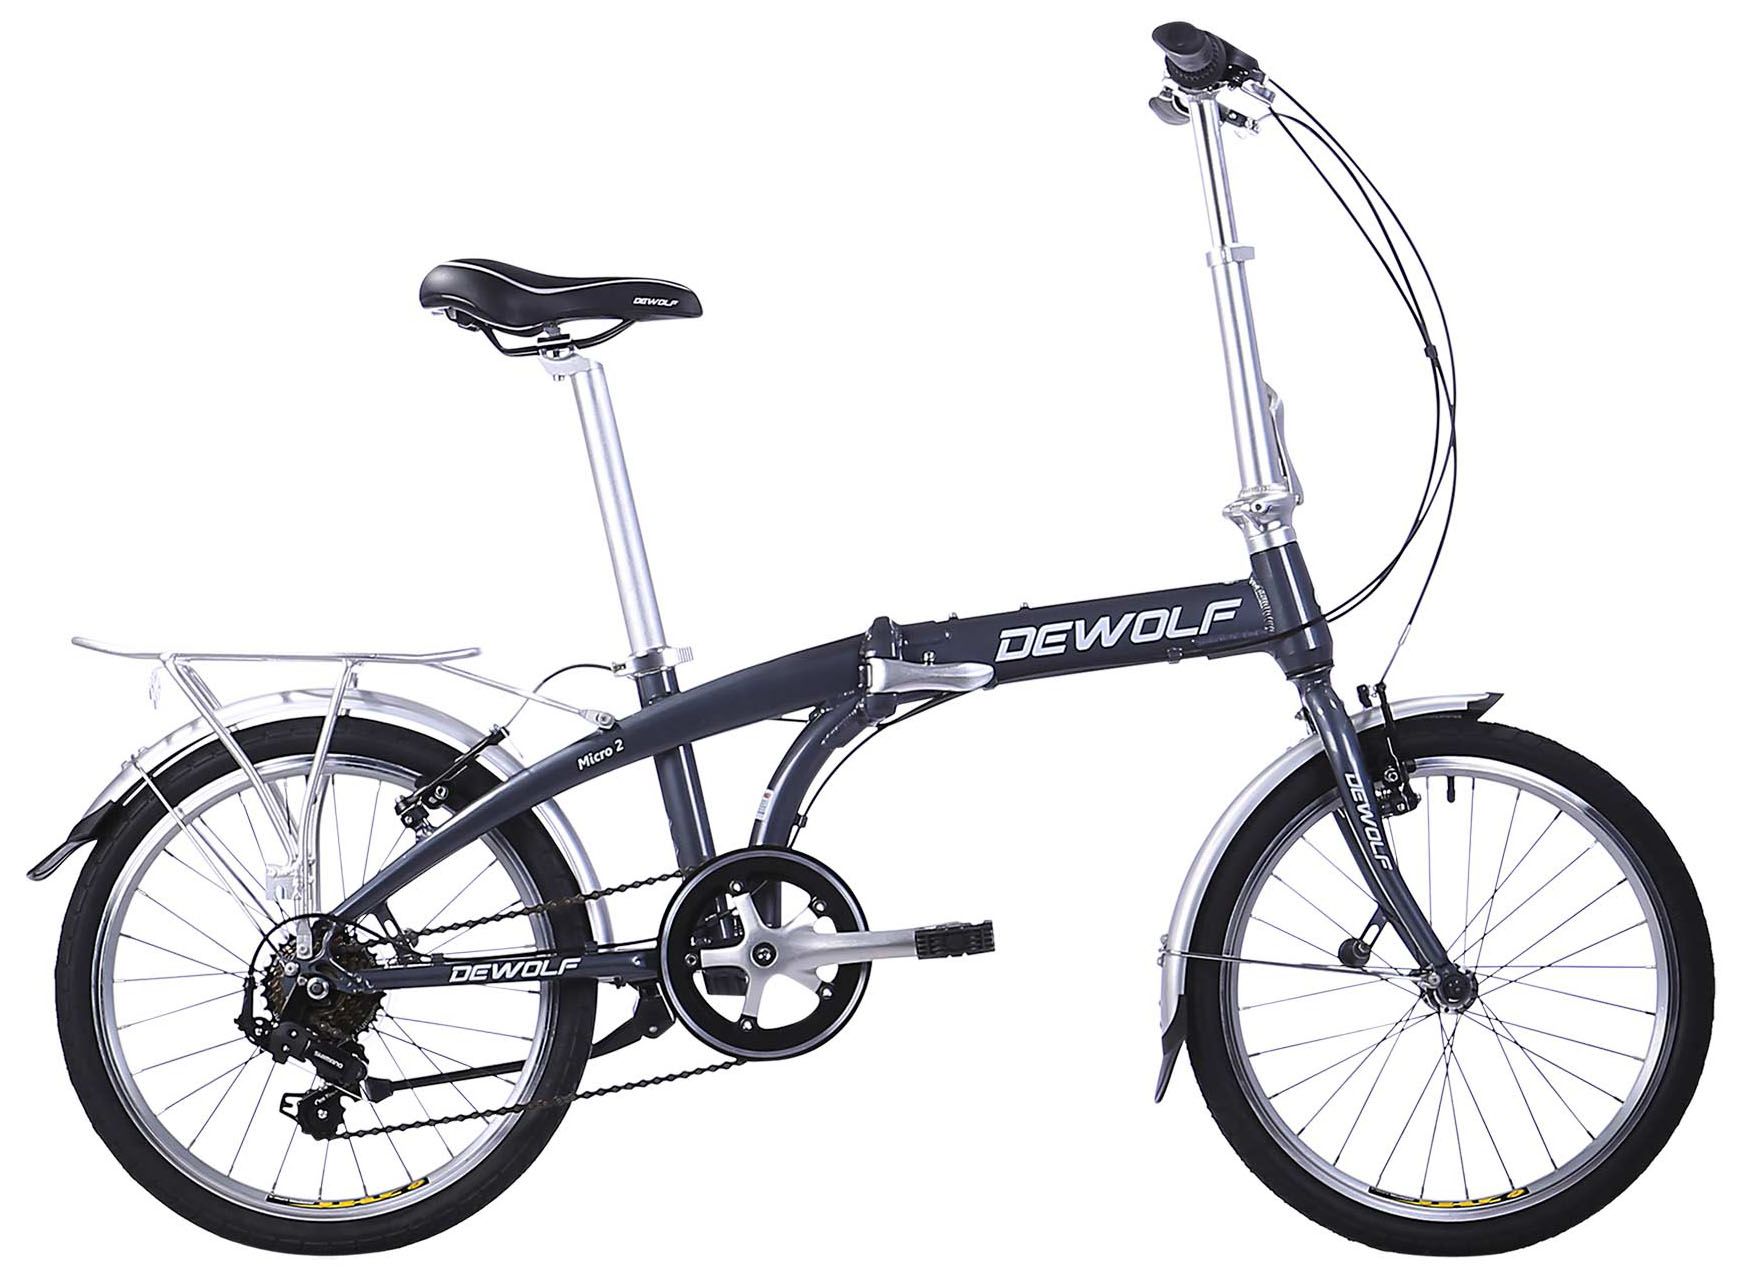  Велосипед Dewolf Micro 2 2018